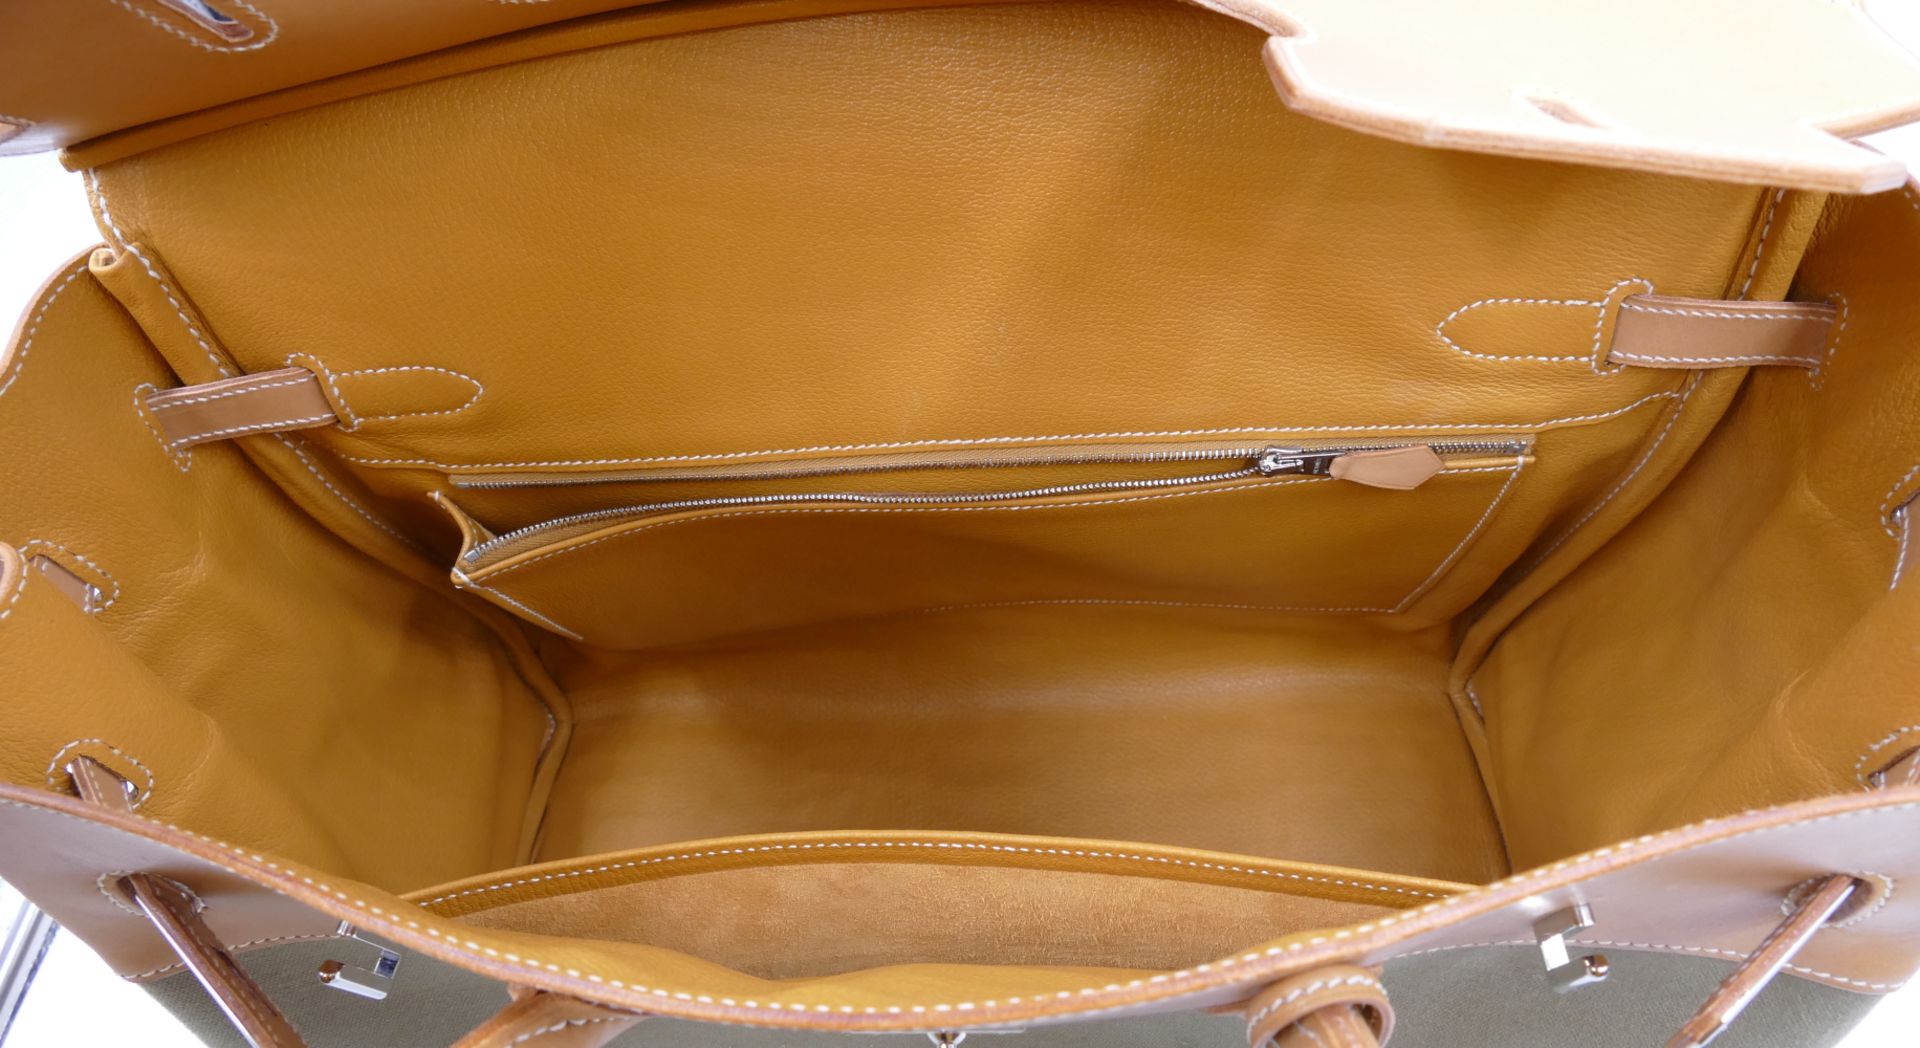 1 Handtasche HERMÈS Birkin 35, blassgrünes Textil mit hellem Leder, innen gelbes Ziegenleder, Schlüs - Bild 5 aus 7